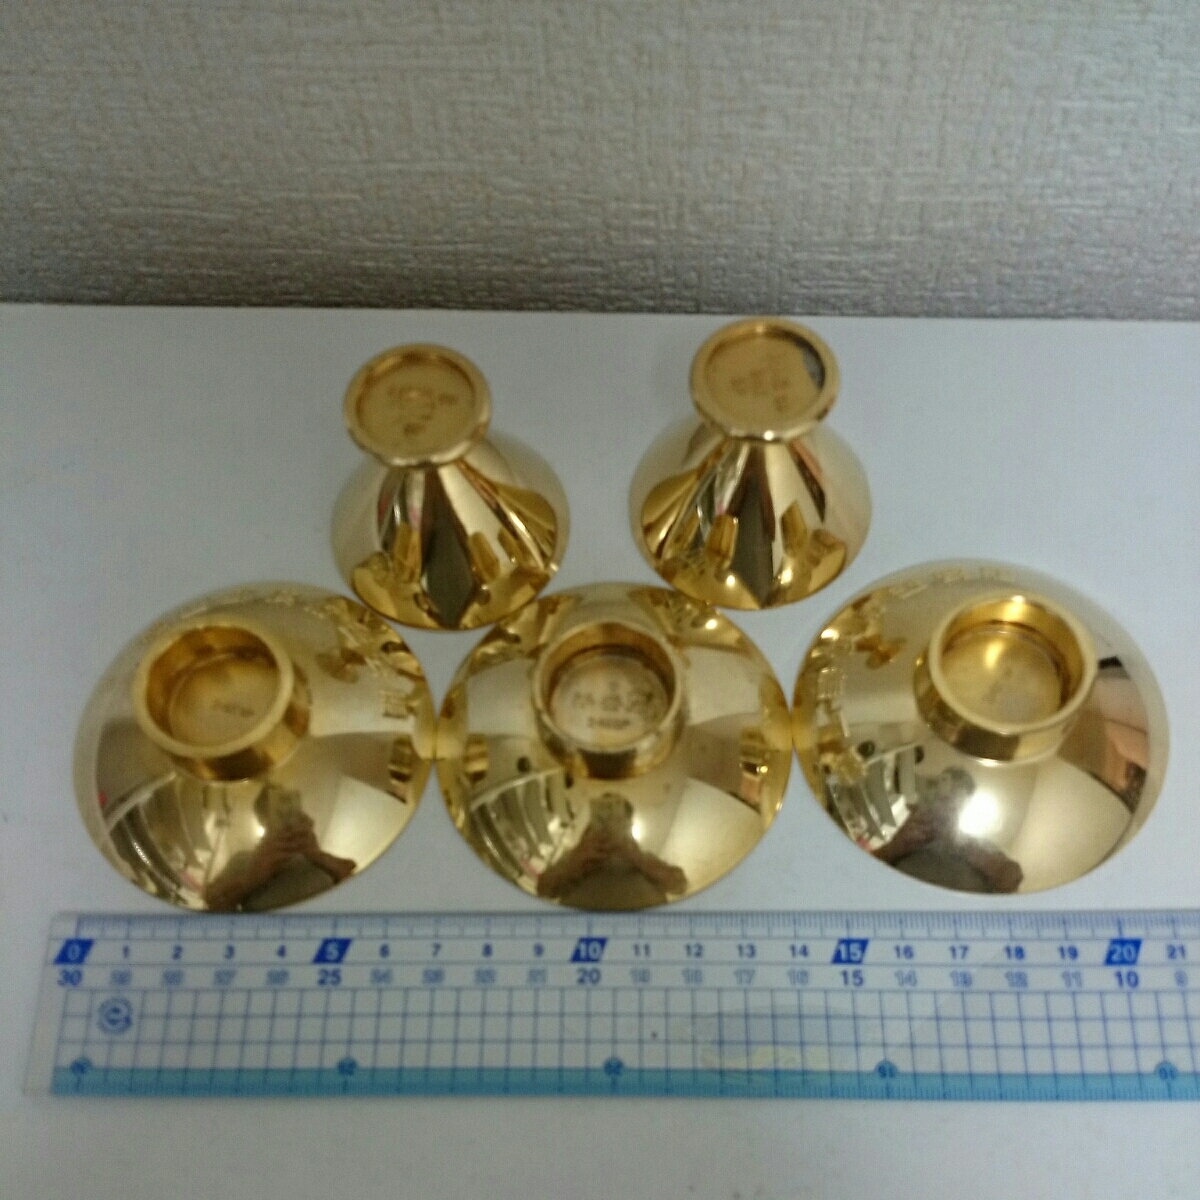  原文:＊⑦金杯 金メッキ24KGPです。松山郵便貯金会館記念品。平安閣記念品など。中古扱いです。